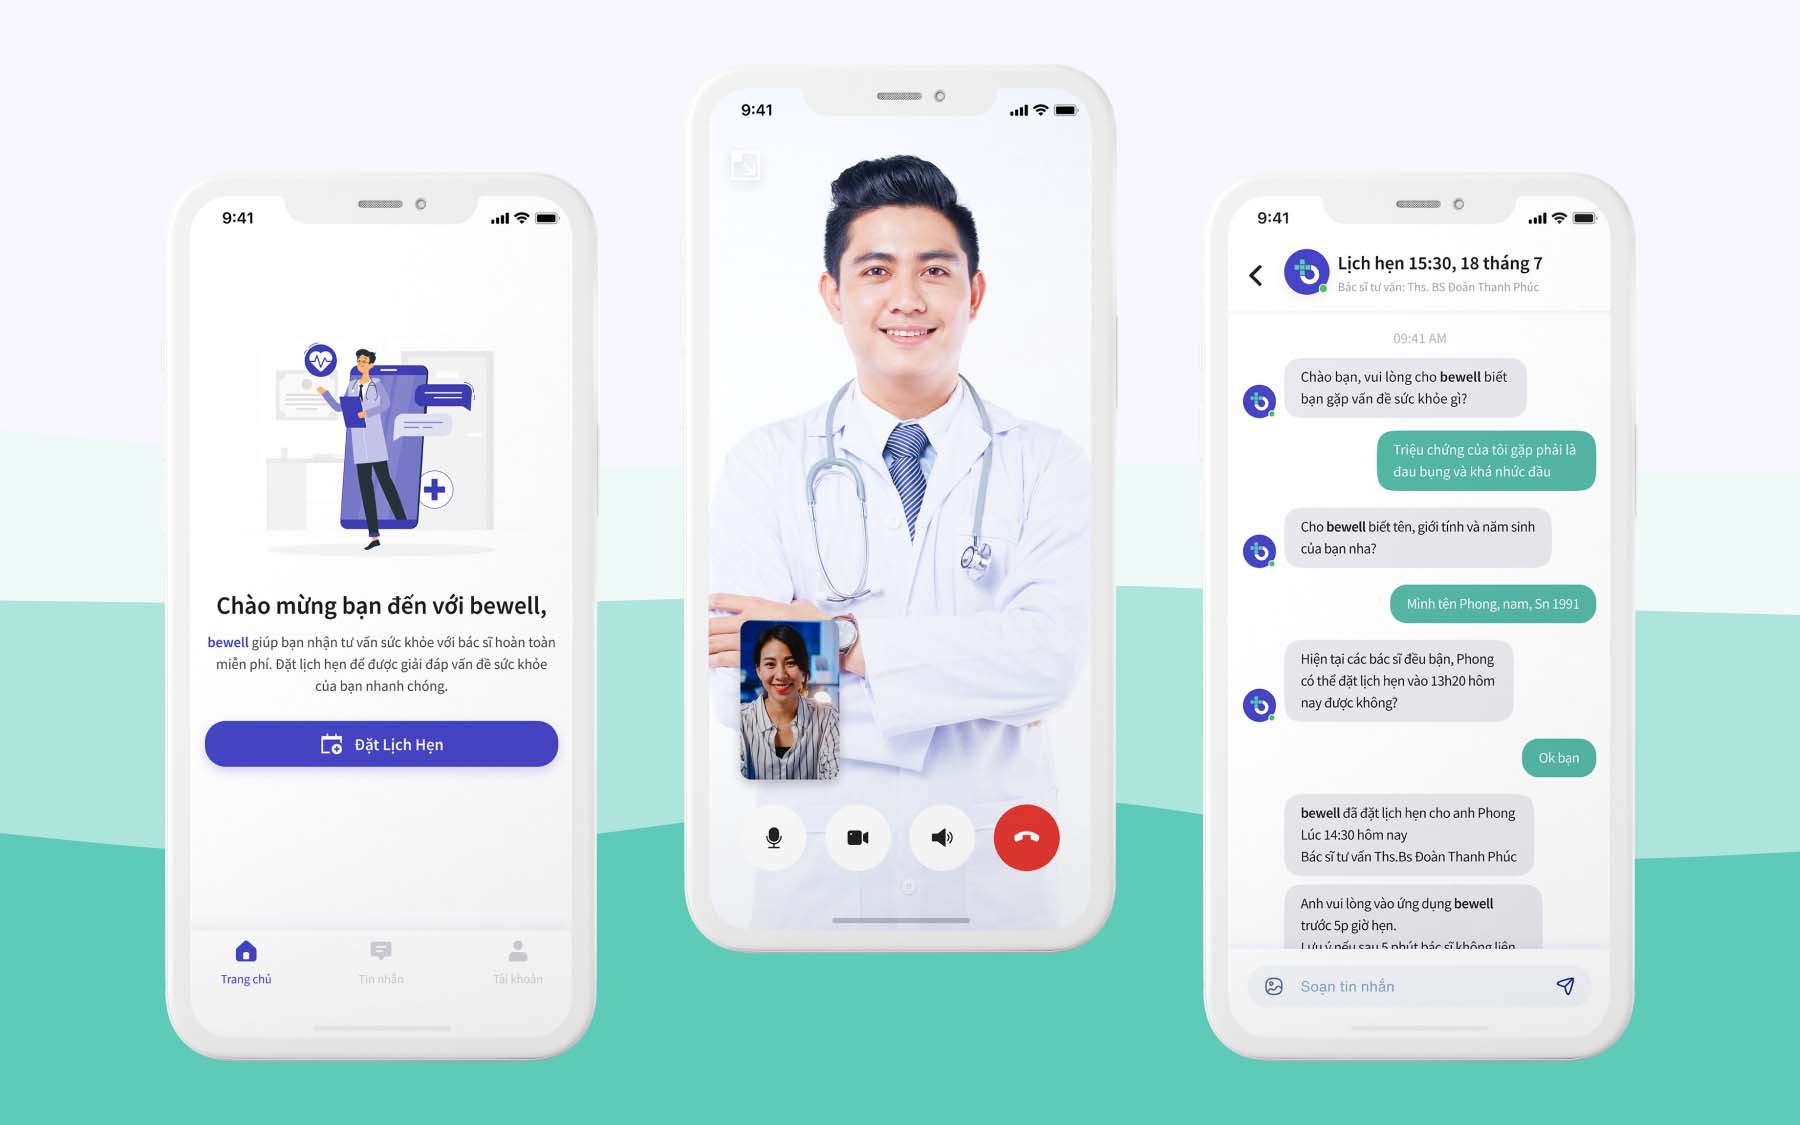 Ứng dụng Bewell kết nối mạng lưới y bác sĩ, hỗ trợ tư vấn sức khỏe trực tuyến miễn phí vì cộng đồng